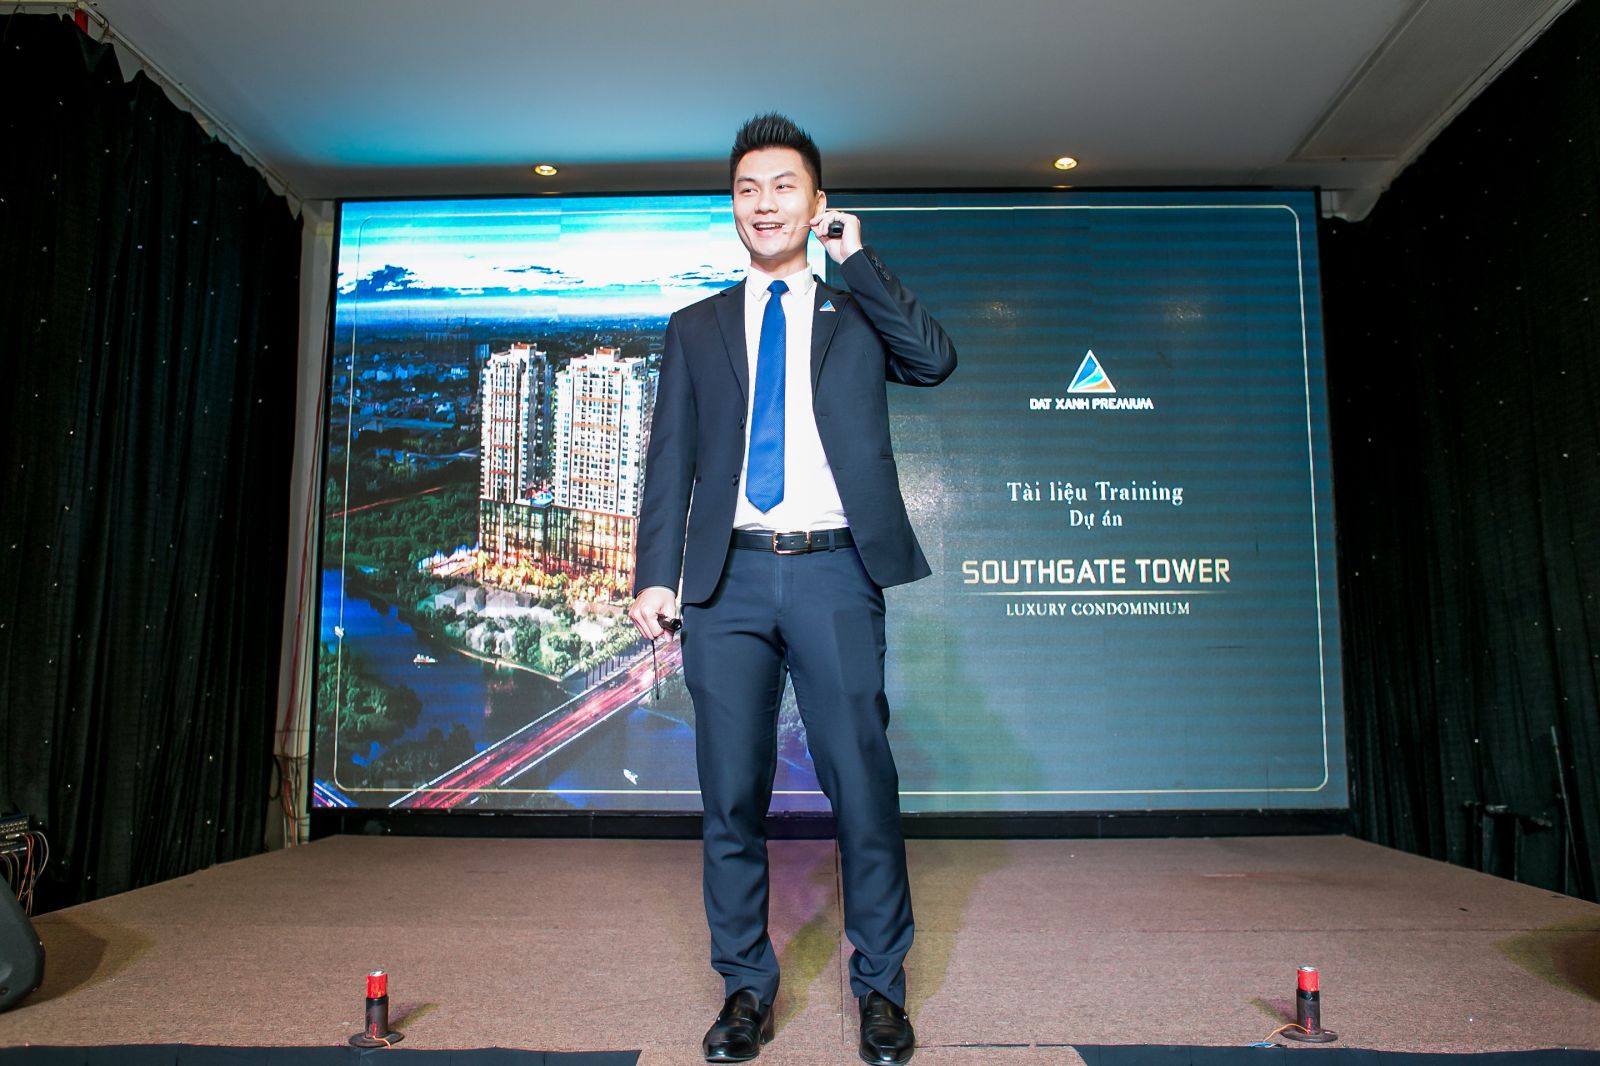 Ông Nguyễn Quốc Quý – Tổng giám đốc Công ty Cổ Phần Đất Xanh Premium training cho nhân viên trong sự kiện lễ ra quân dự án Southgate Tower